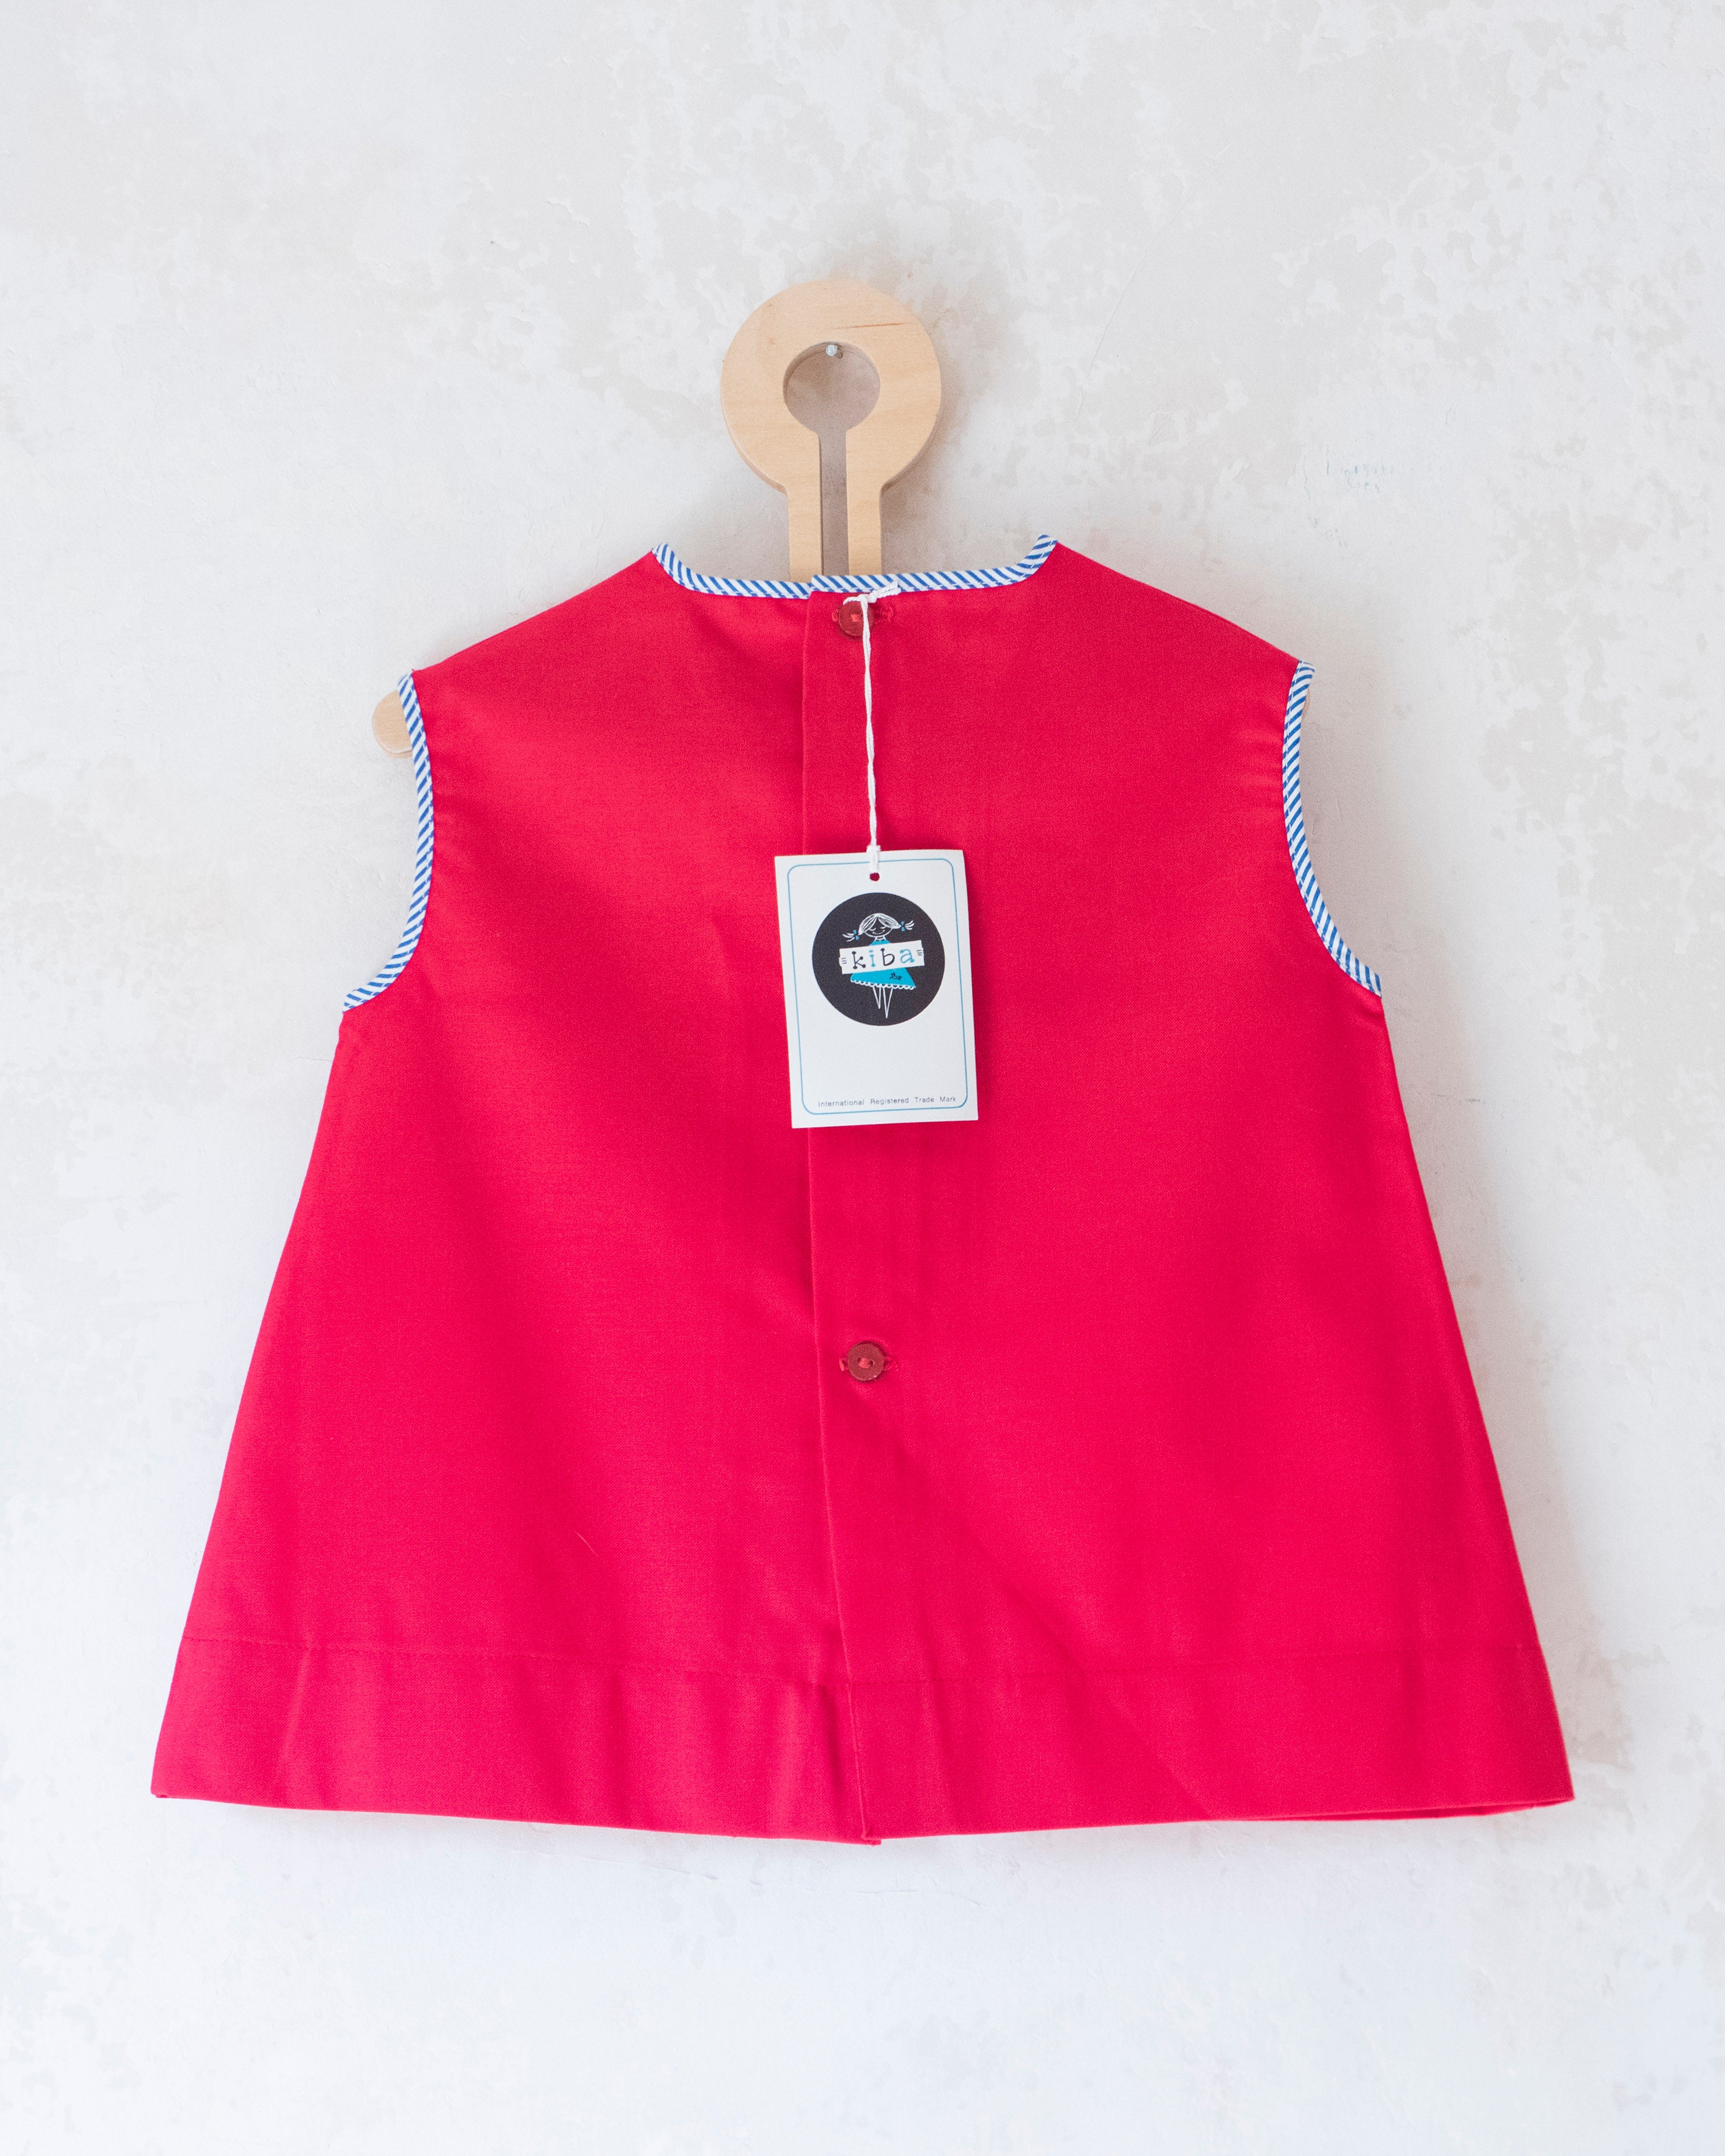 שמלה אדומה עם עכבר | דד סטוק מהסיקסטיז | 12-18 חודשים